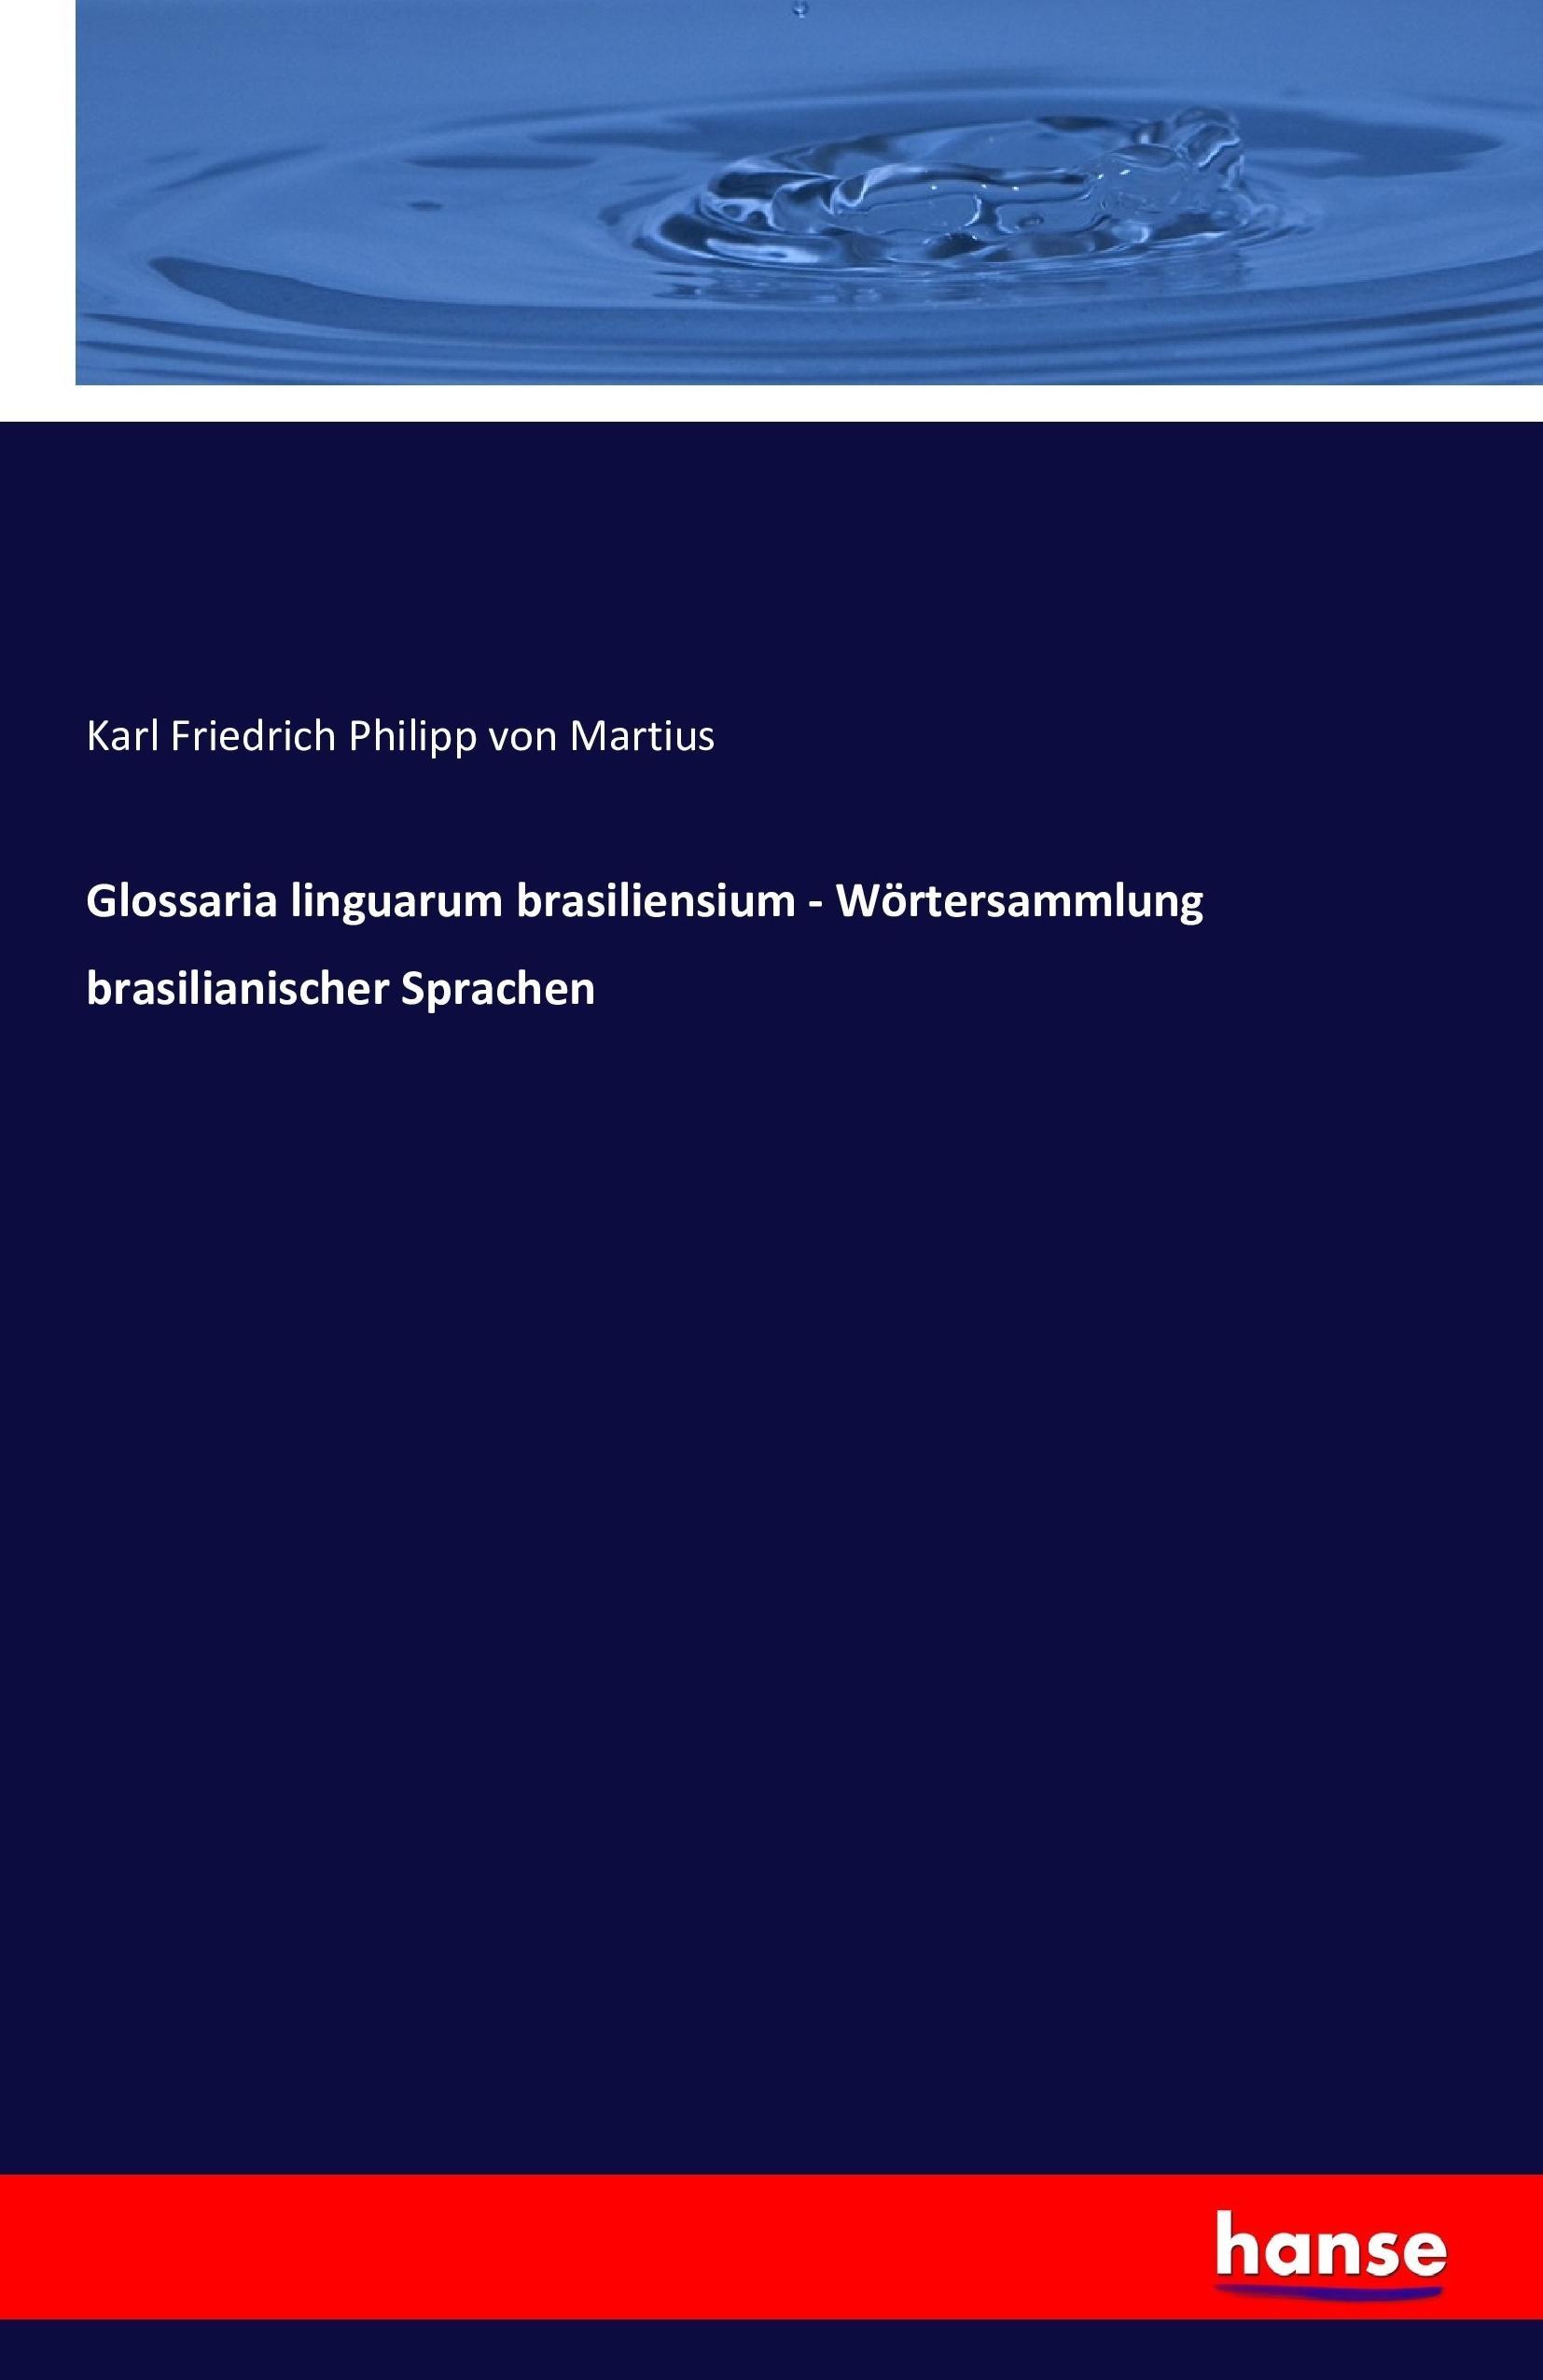 Glossaria linguarum brasiliensium - Wörtersammlung brasilianischer Sprachen / Karl Friedrich Philipp Von Martius / Taschenbuch / Paperback / 576 S. / Deutsch / 2016 / hansebooks / EAN 9783742885890 - Martius, Karl Friedrich Philipp Von